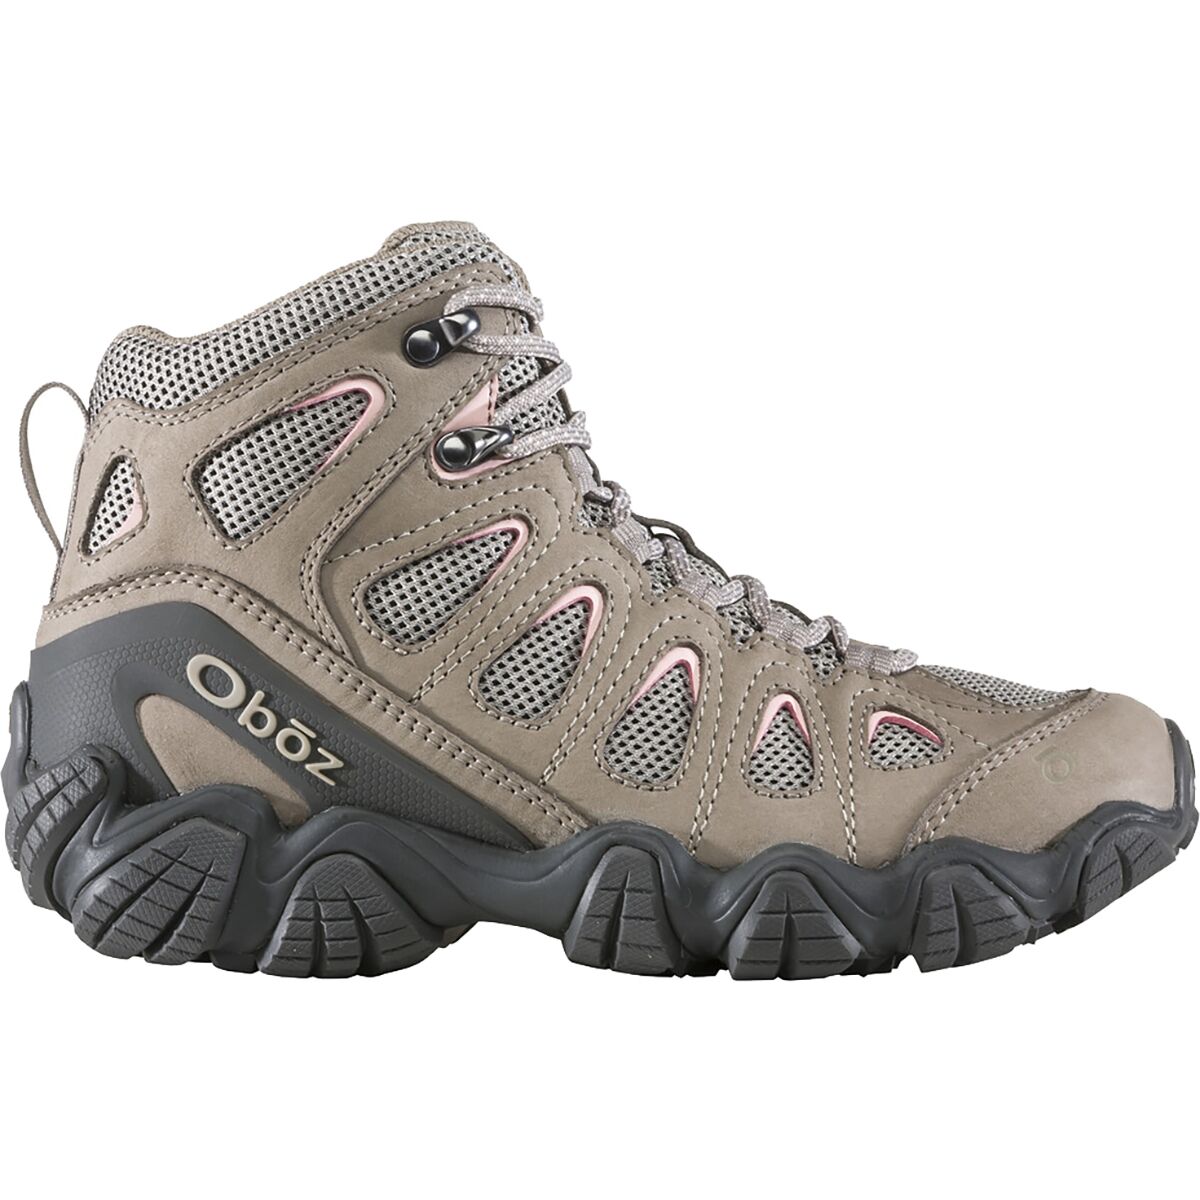 Oboz Sawtooth II Mid Hiking Boot - Women's